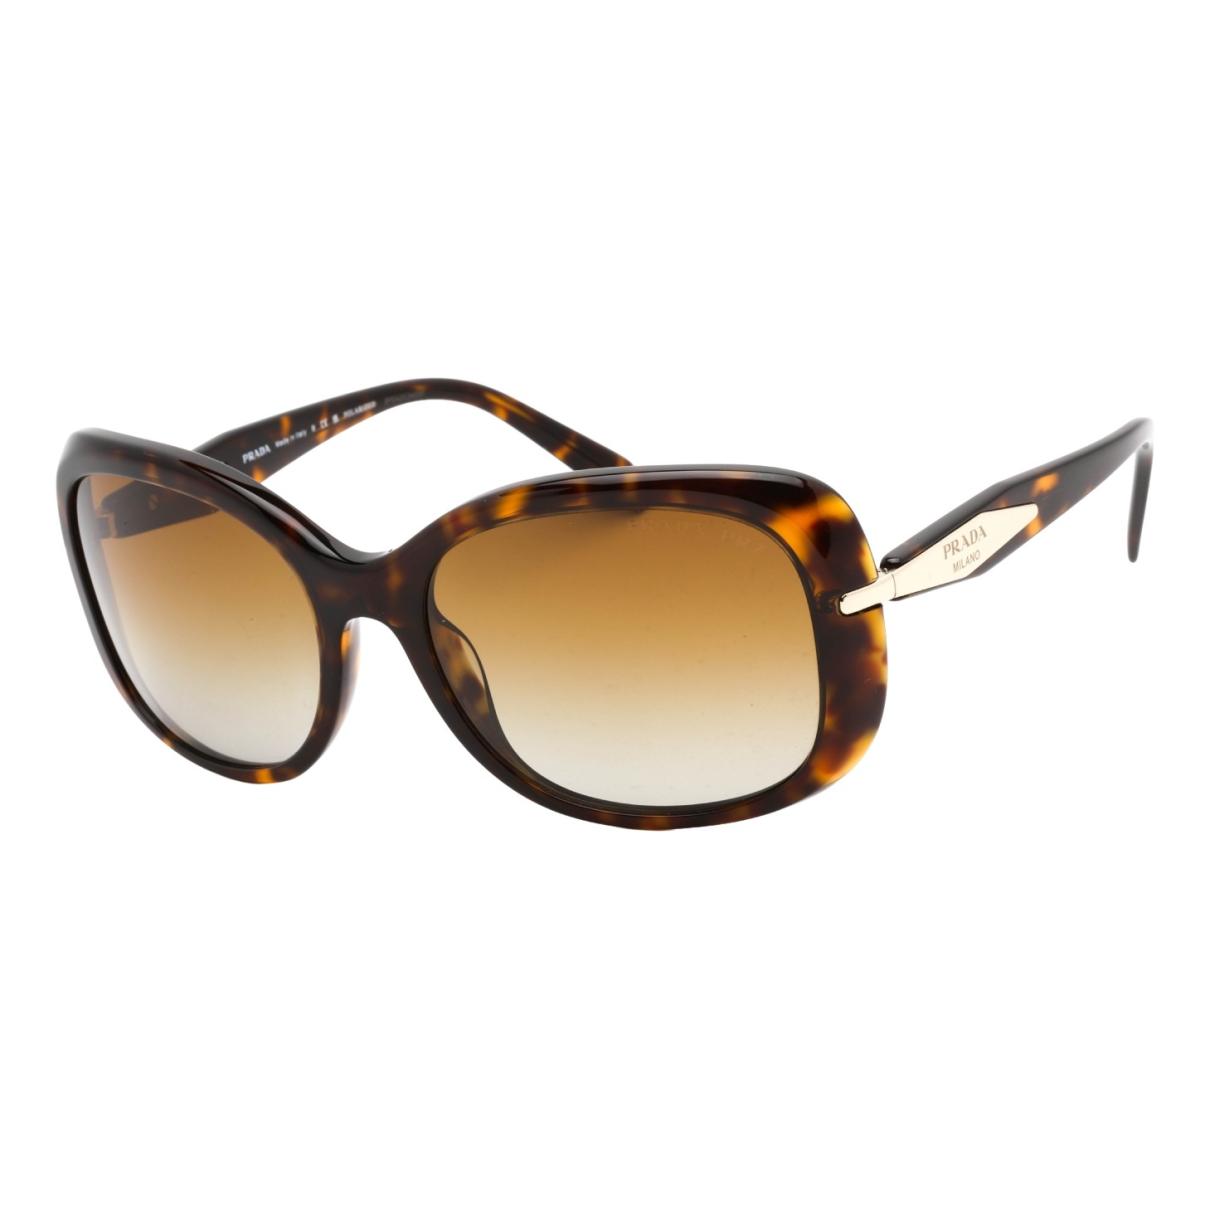 Sunglasses Chanel Brown in Plastic - 29496985